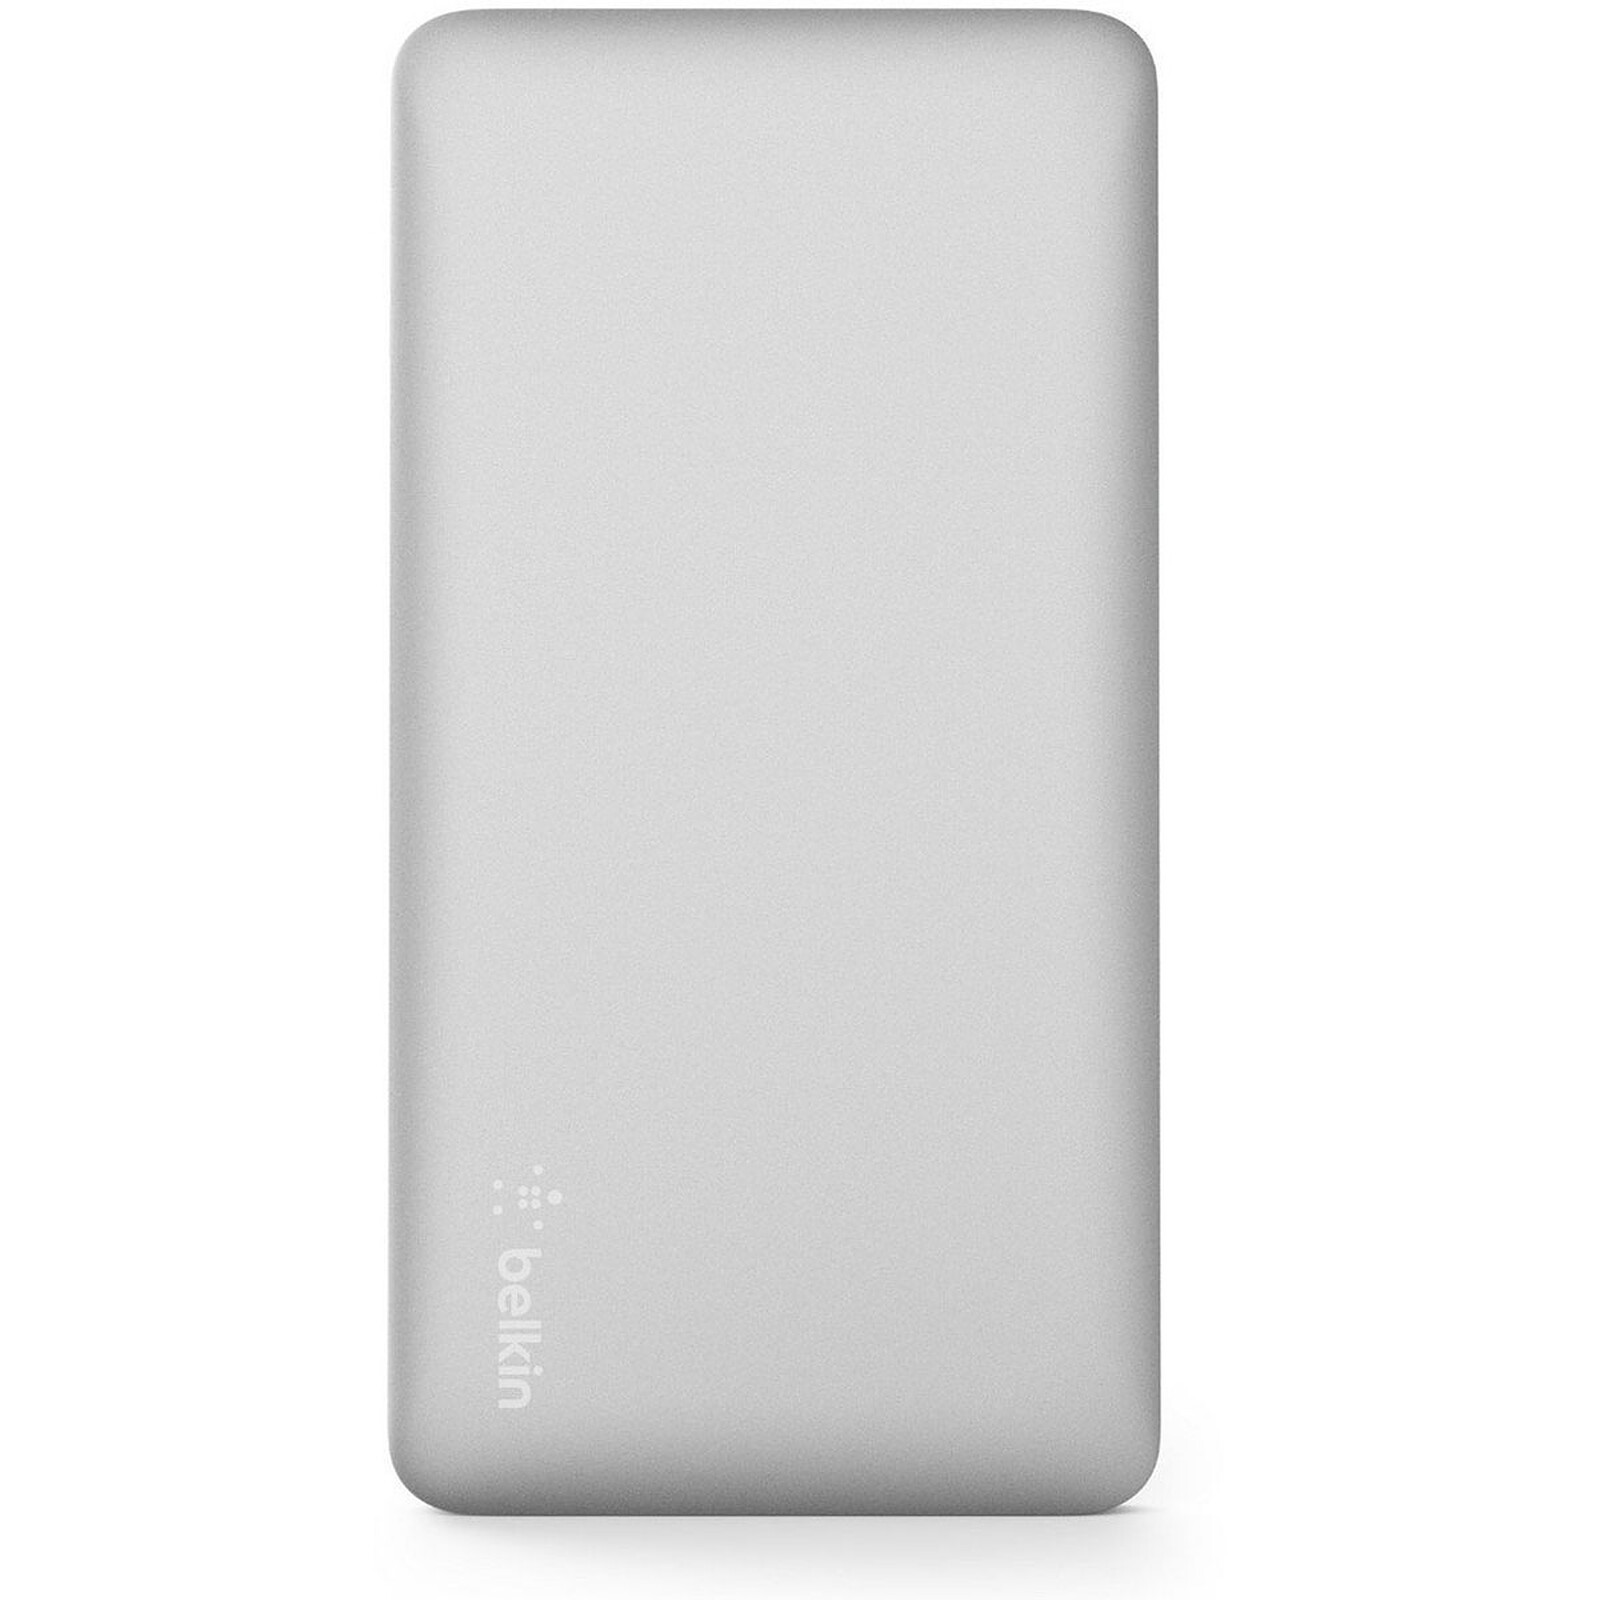 Batería externa Belkin 5K con soporte para smartphone (Blanco